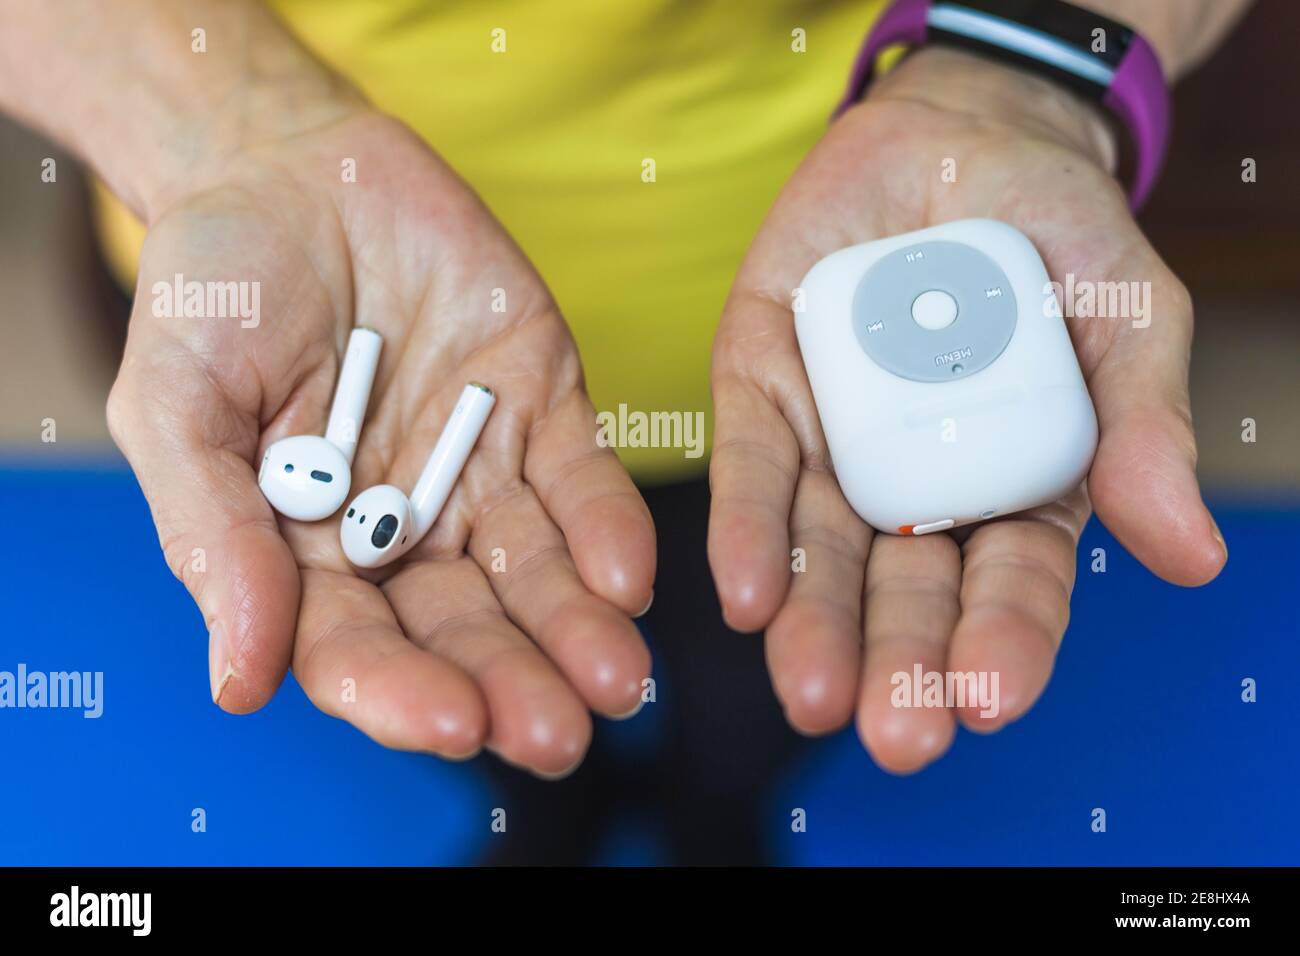 Von oben Crop nicht erkennbare Person trägt Fitness Armband zeigt drahtlos Ohrstöpsel und moderner MP3-Player an den Händen Stockfoto